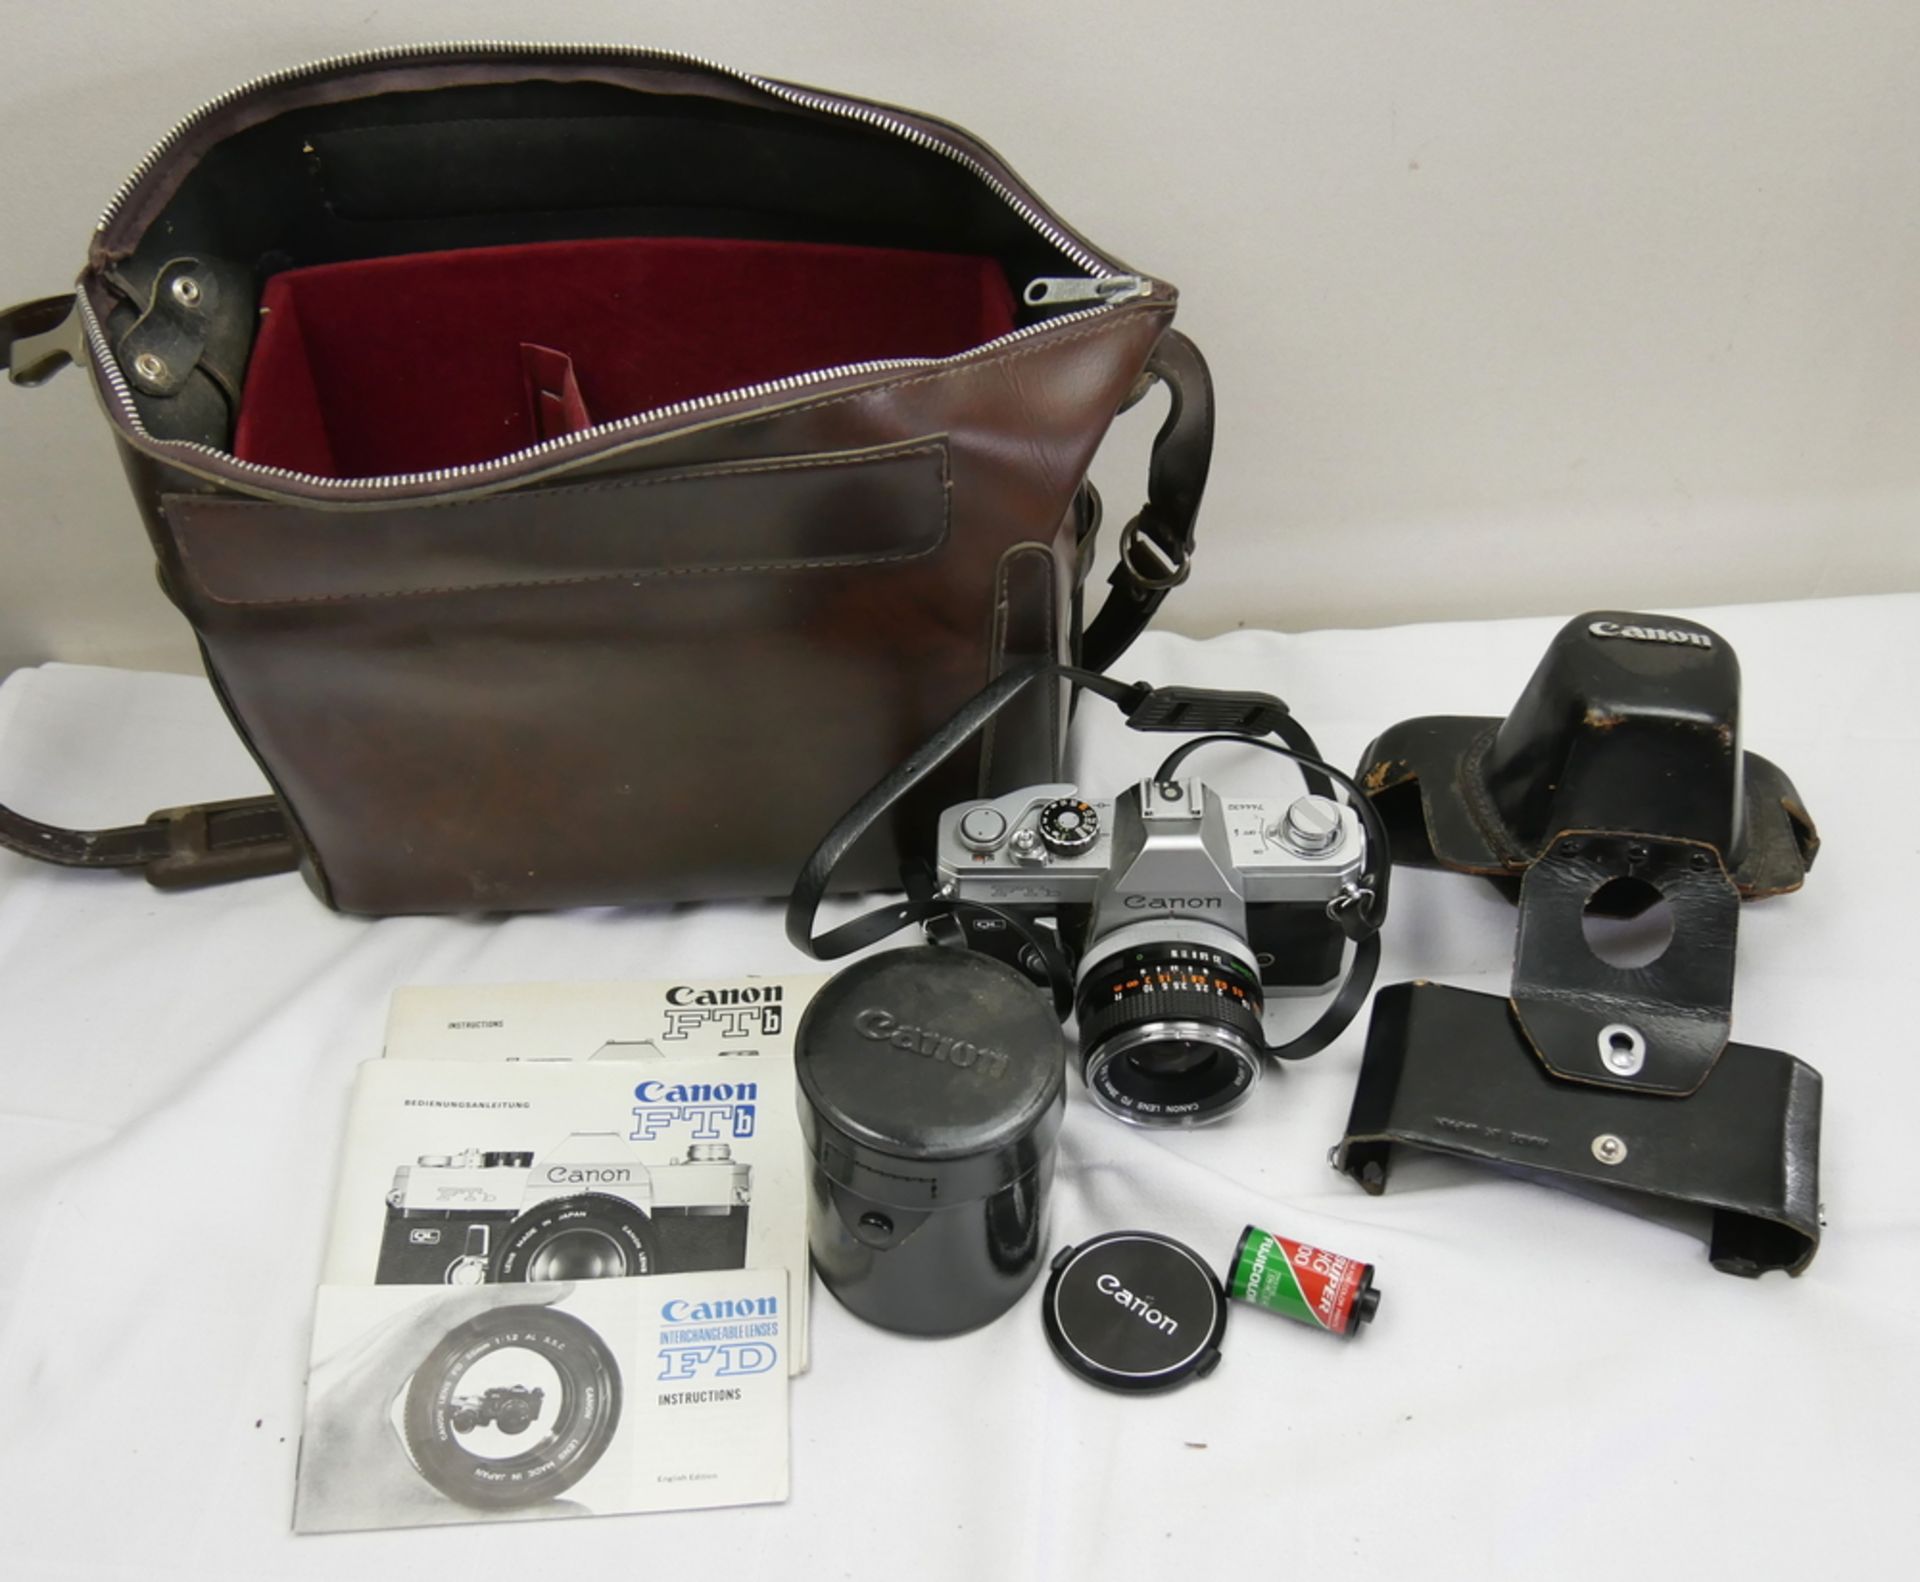 Canon FTb Kamera (ab März 1971 von Canon in Japan hergestellt) mit Visier und Aufbewahrungstasche.